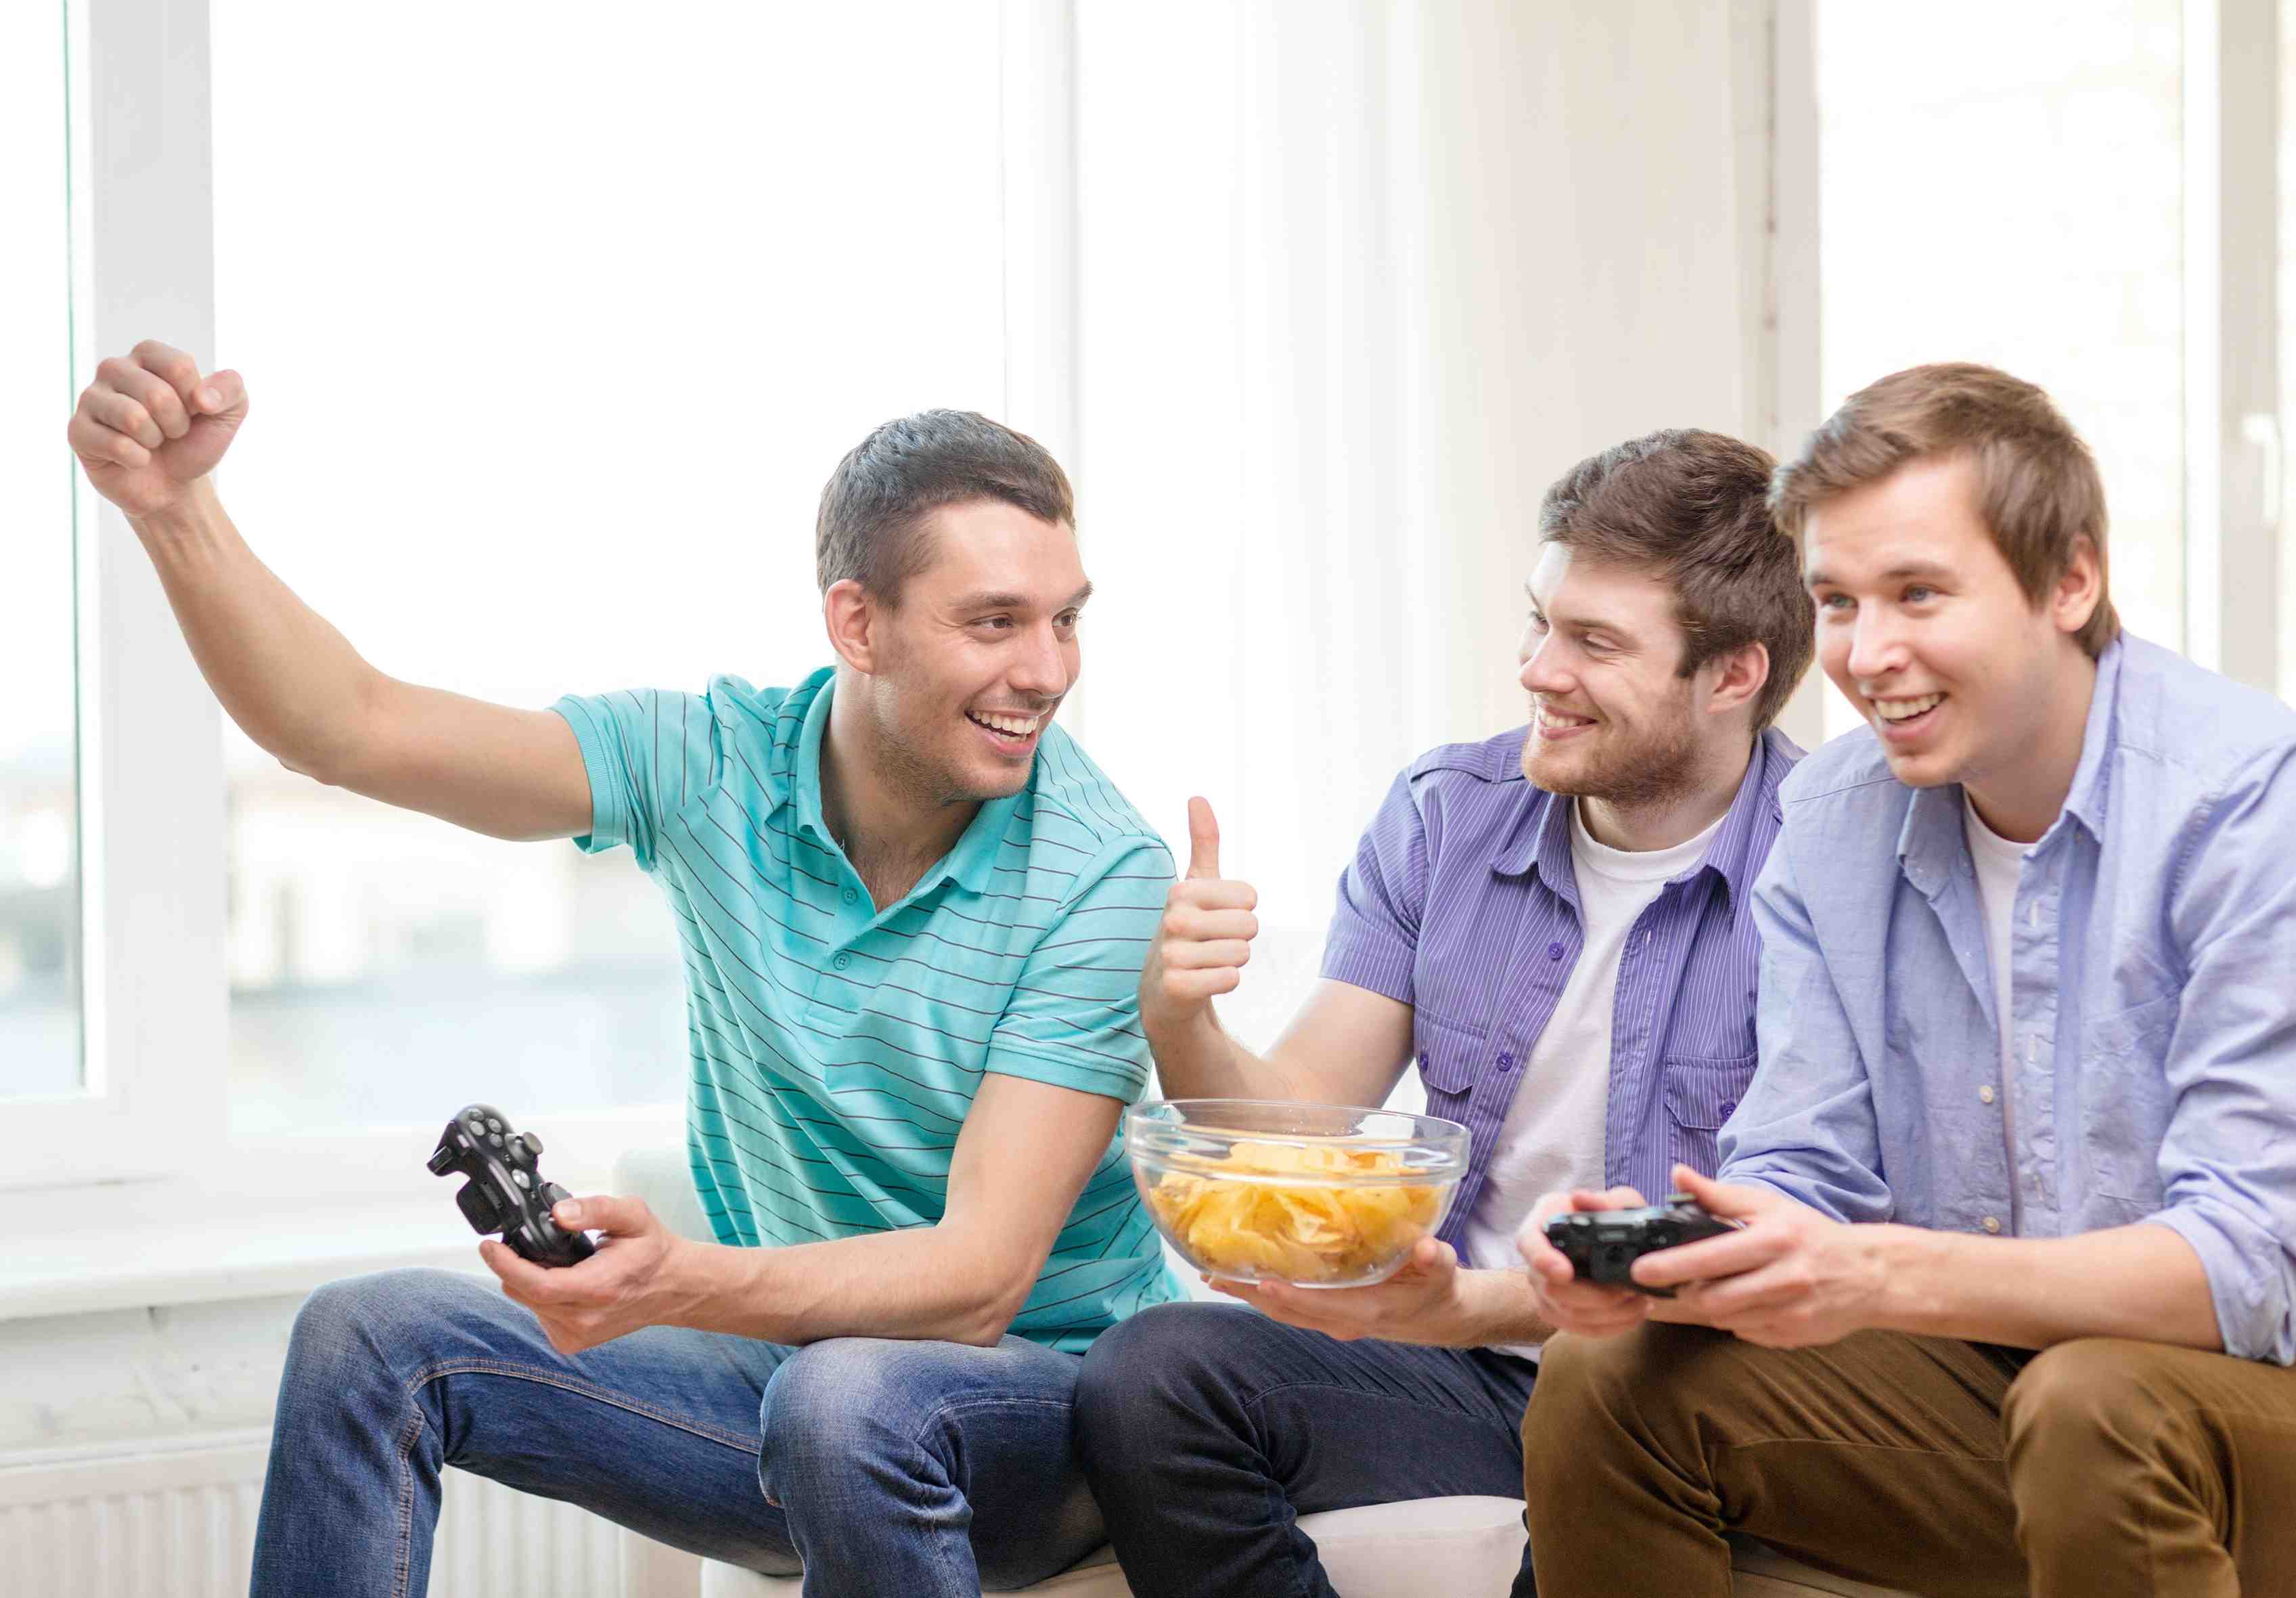 35 juegos online para jugar con amigos - ¡Los mejores juegos multijugadores!